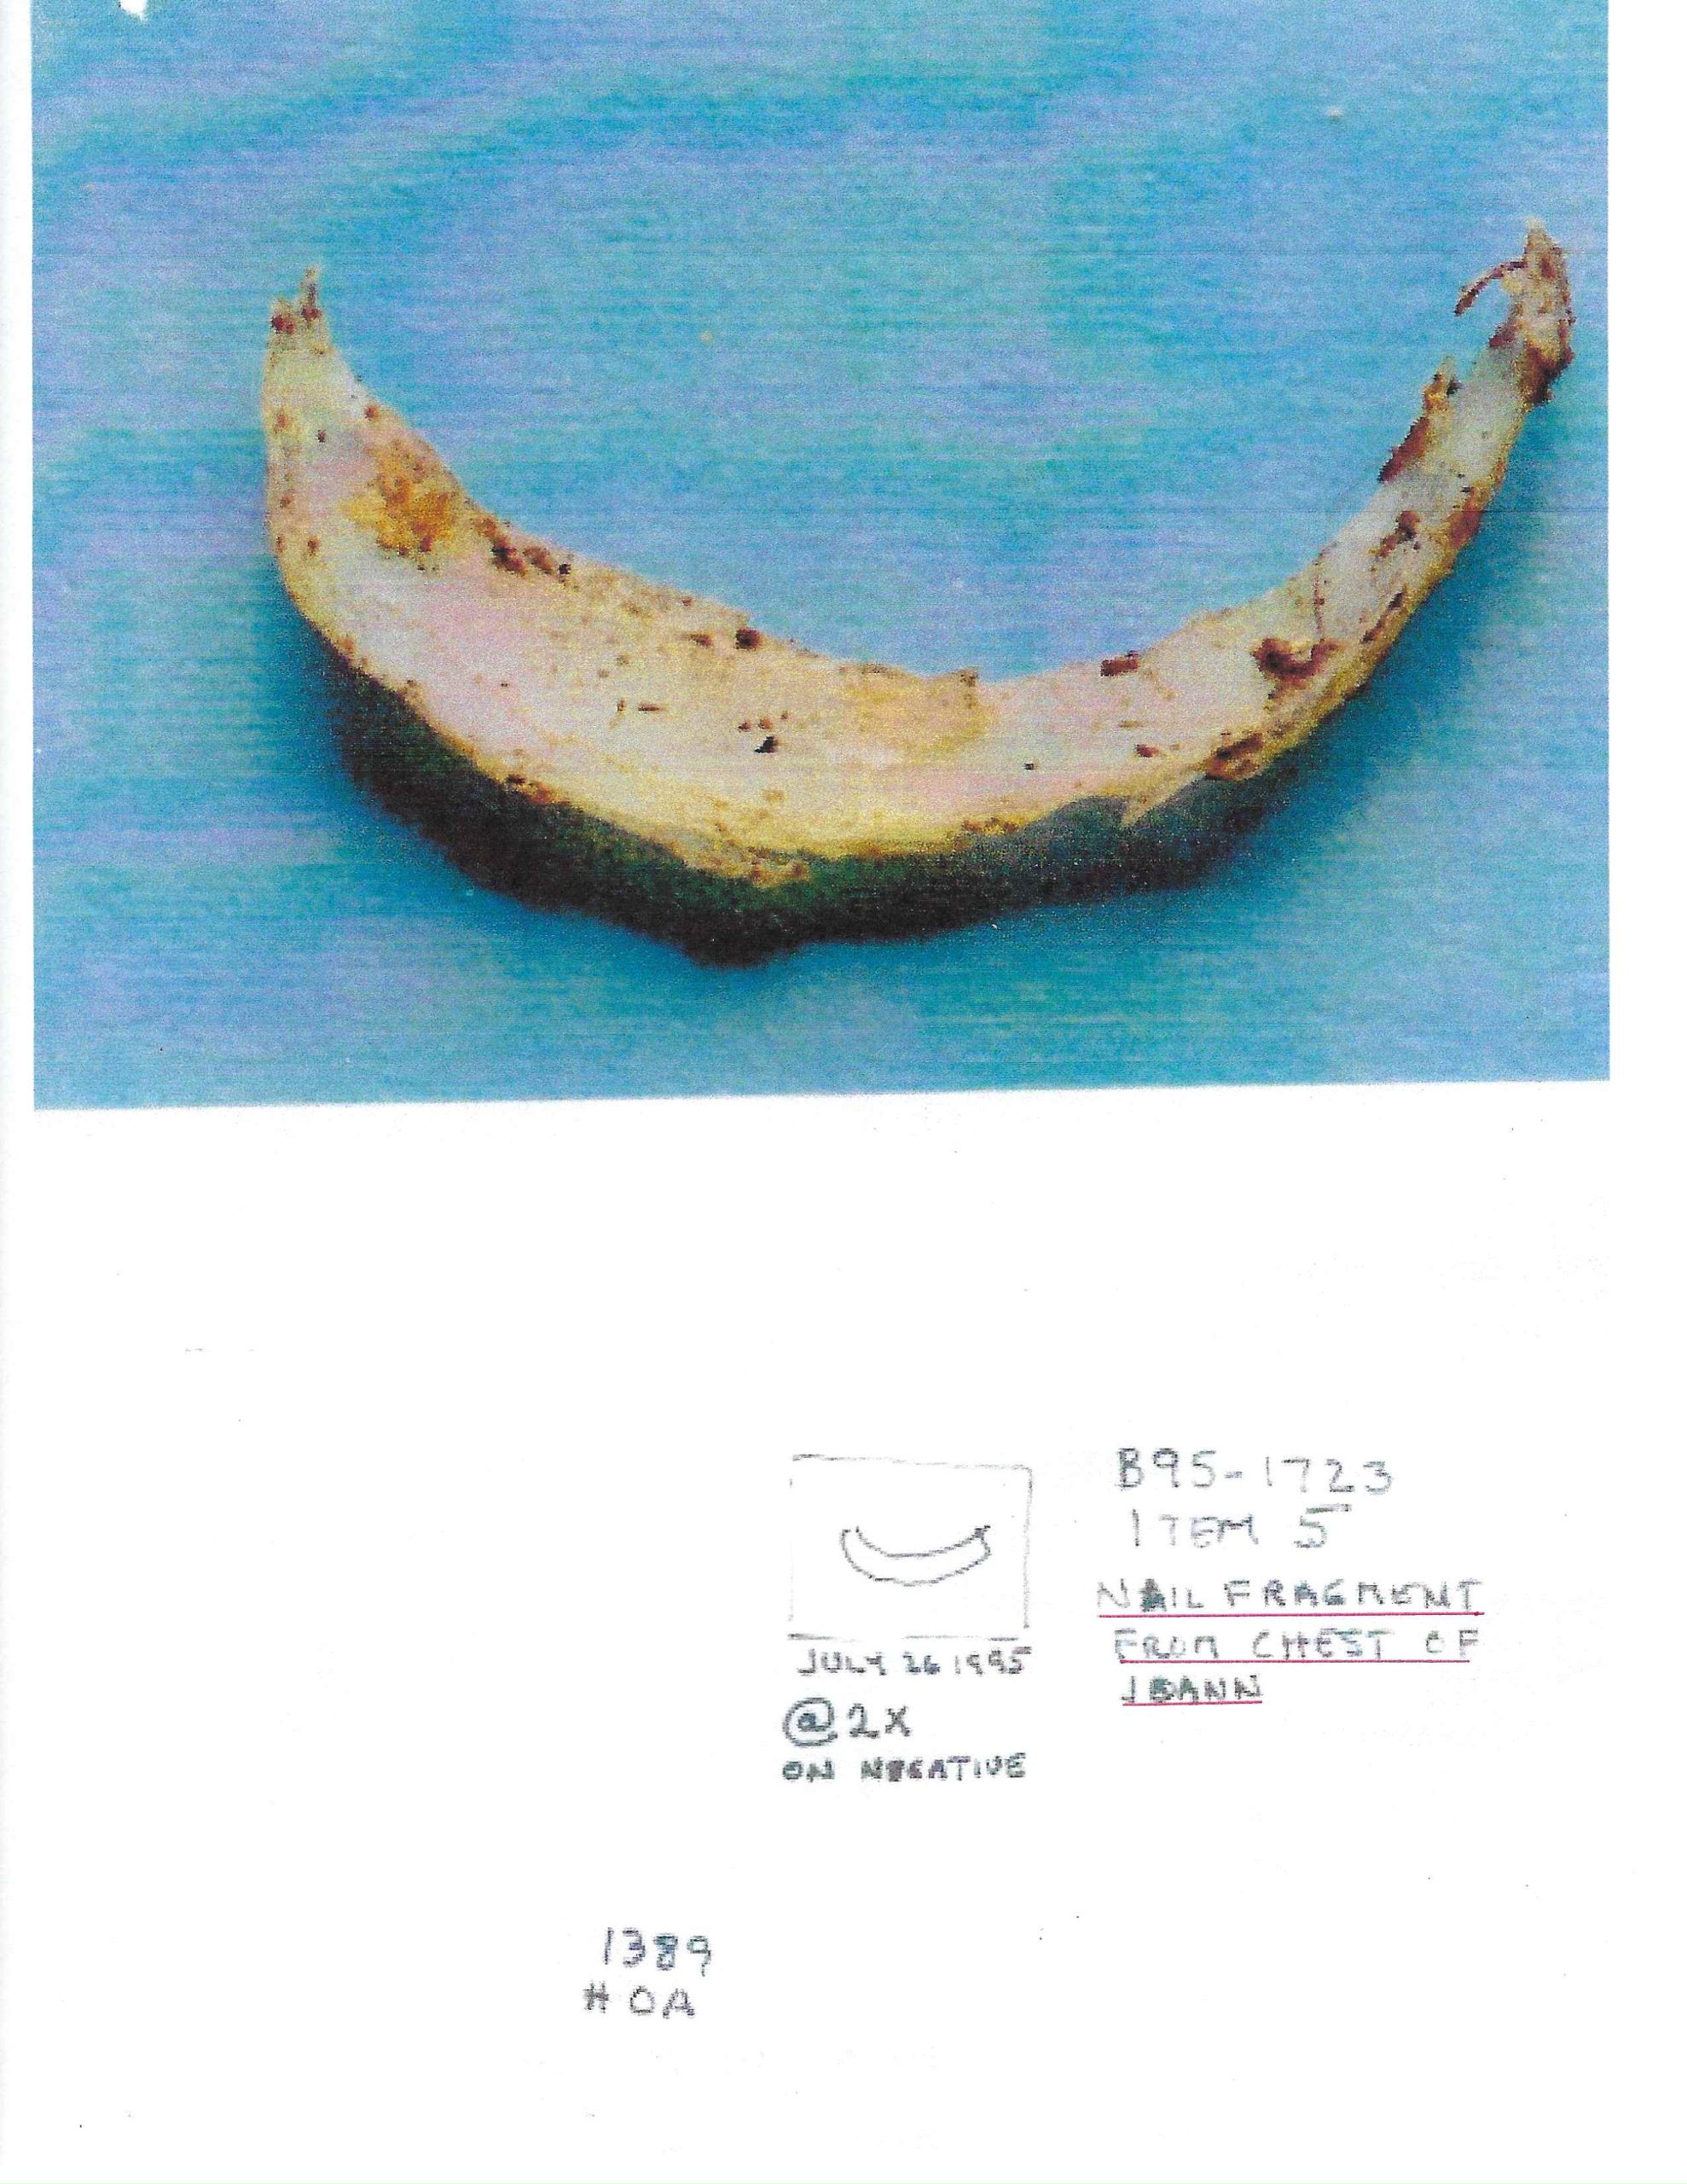 image of the Fingernail fragment found on Joann's chest